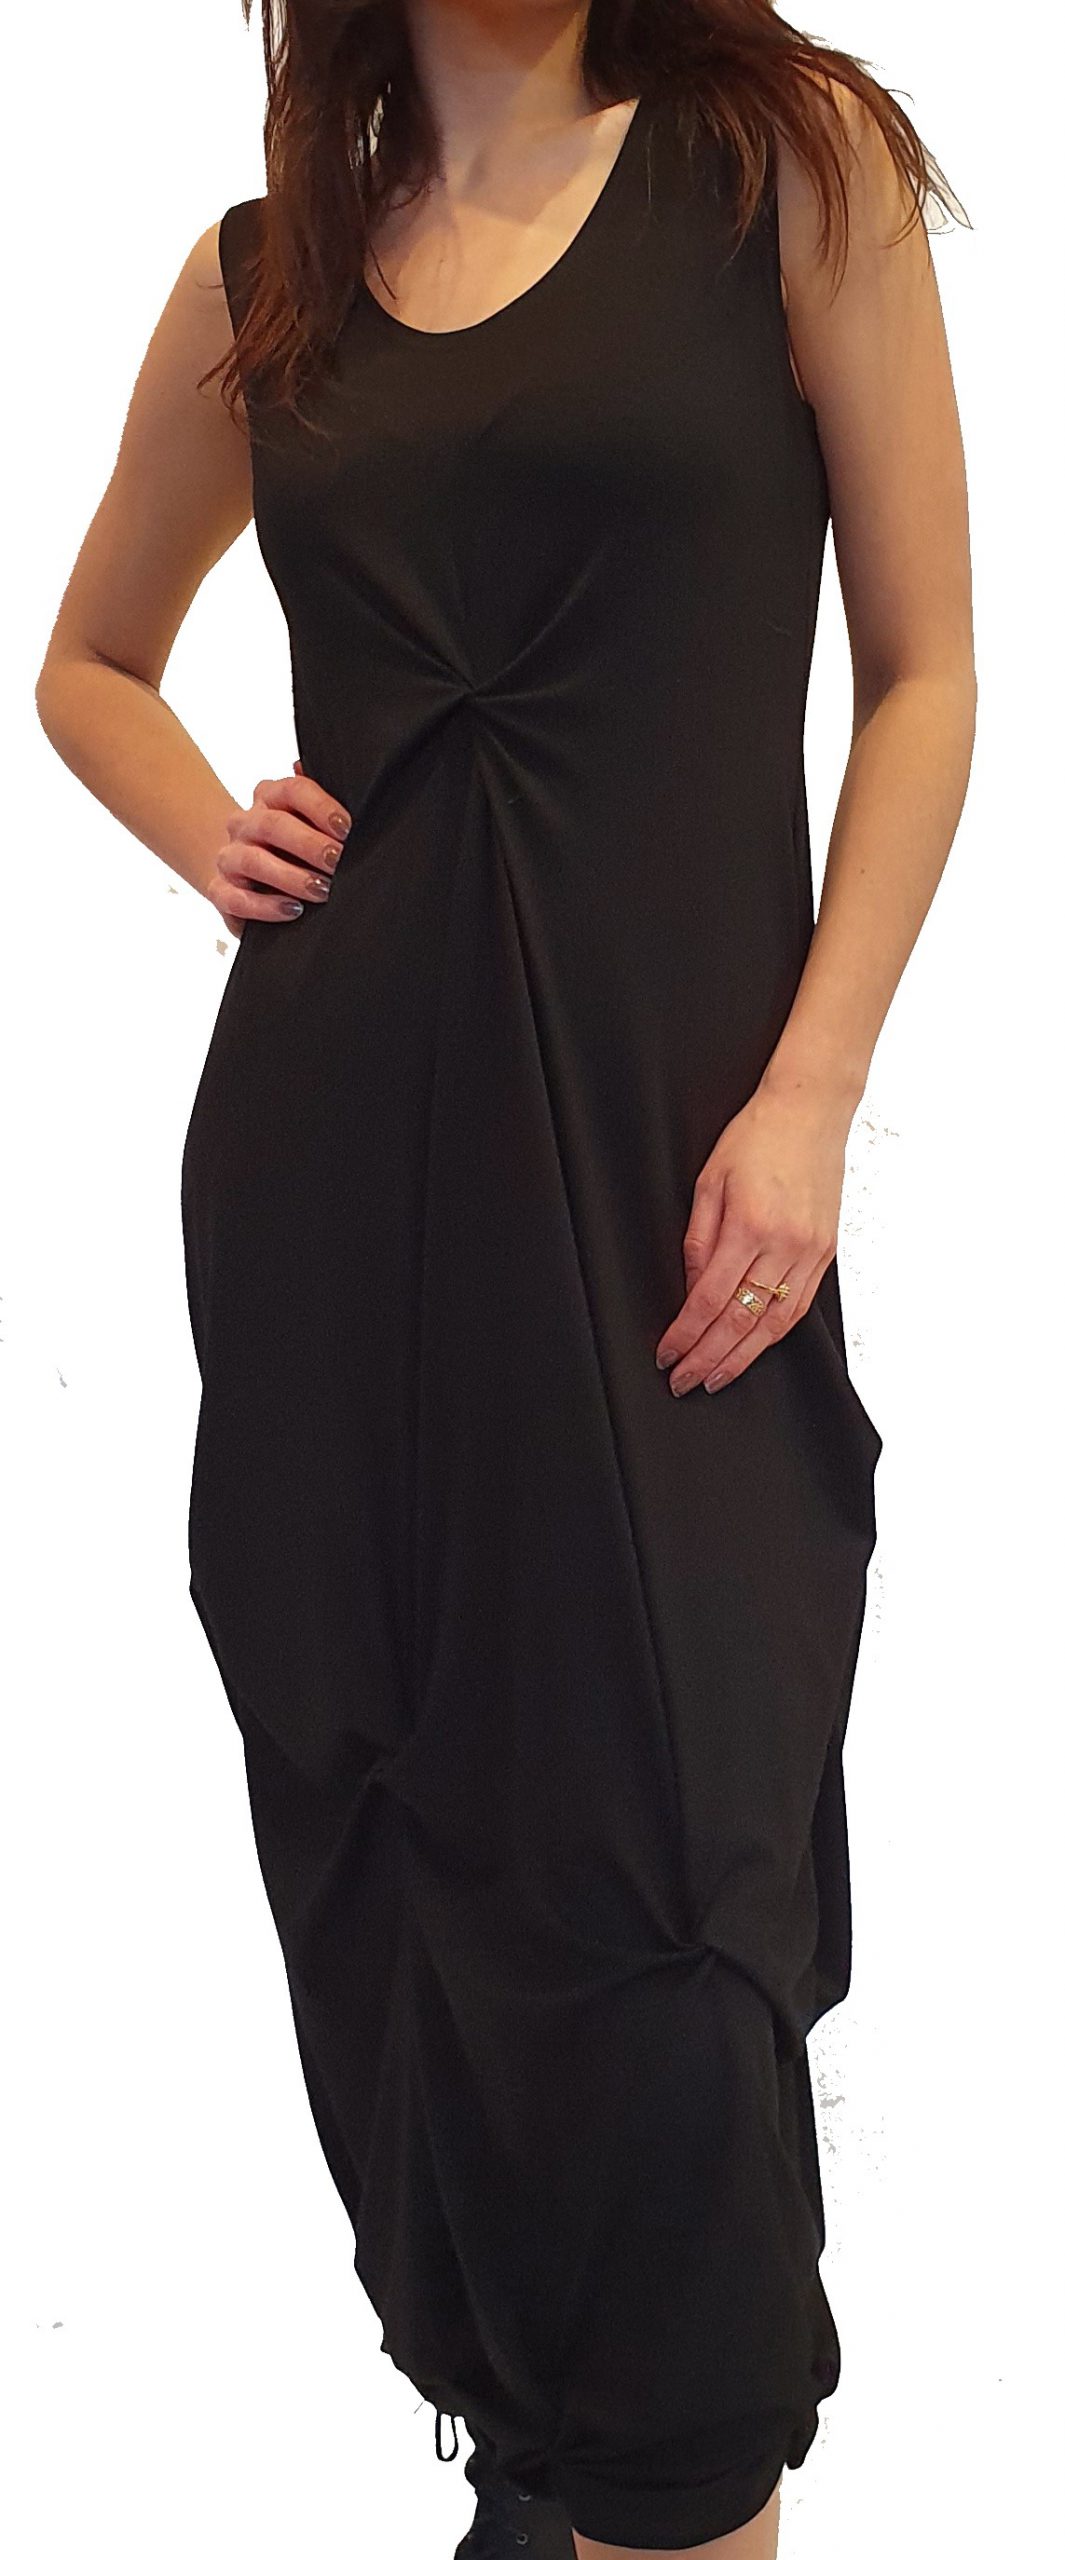 "Mika" is een fantastische nieuwe jurk in iedere gewenste kleur! - SJÀZZ Design